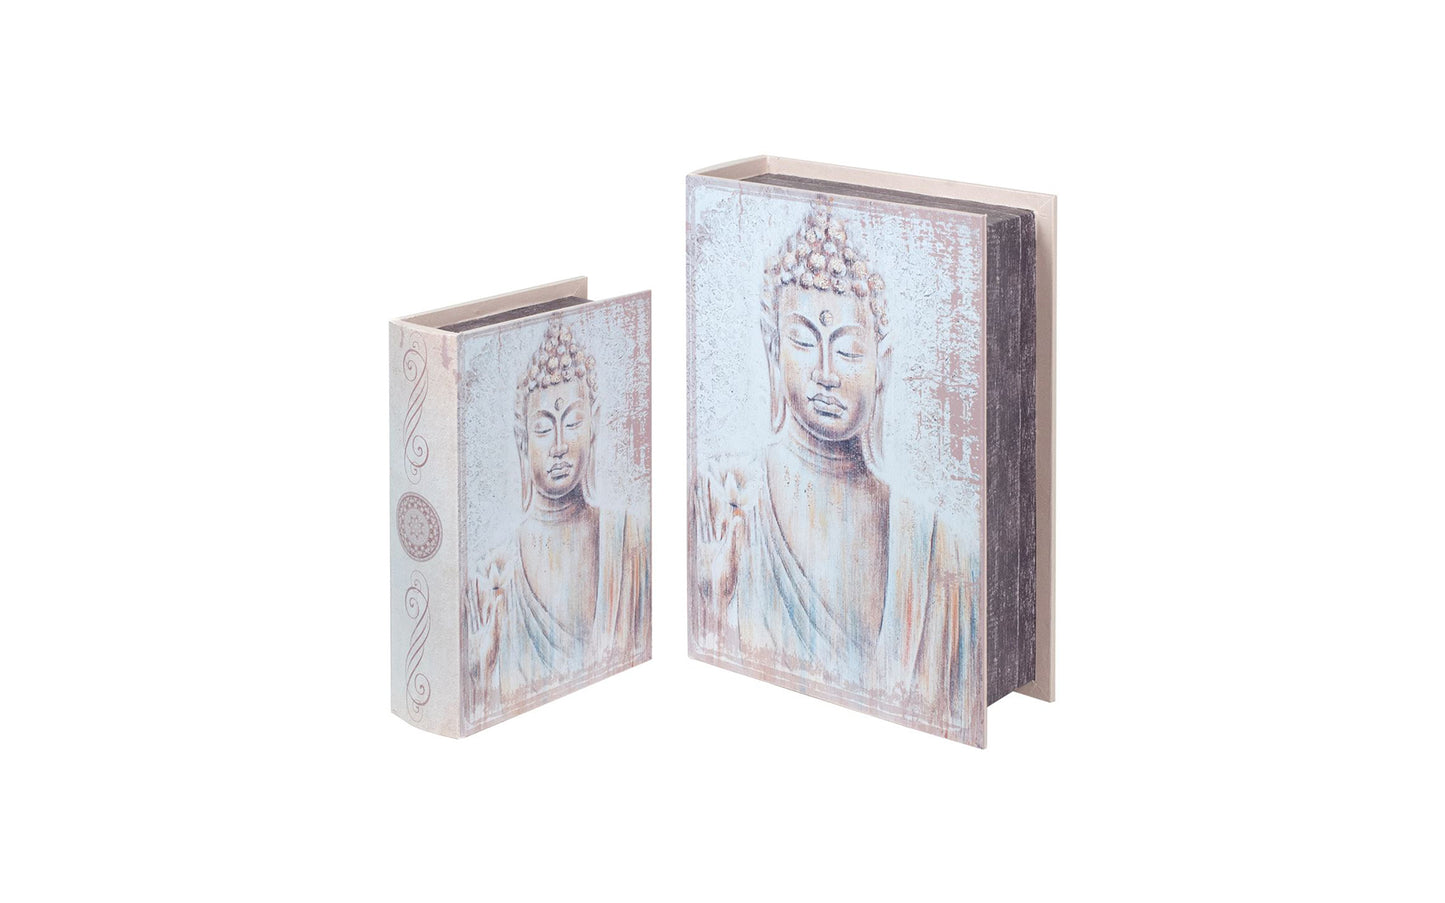 Caixa Livro "Buda"